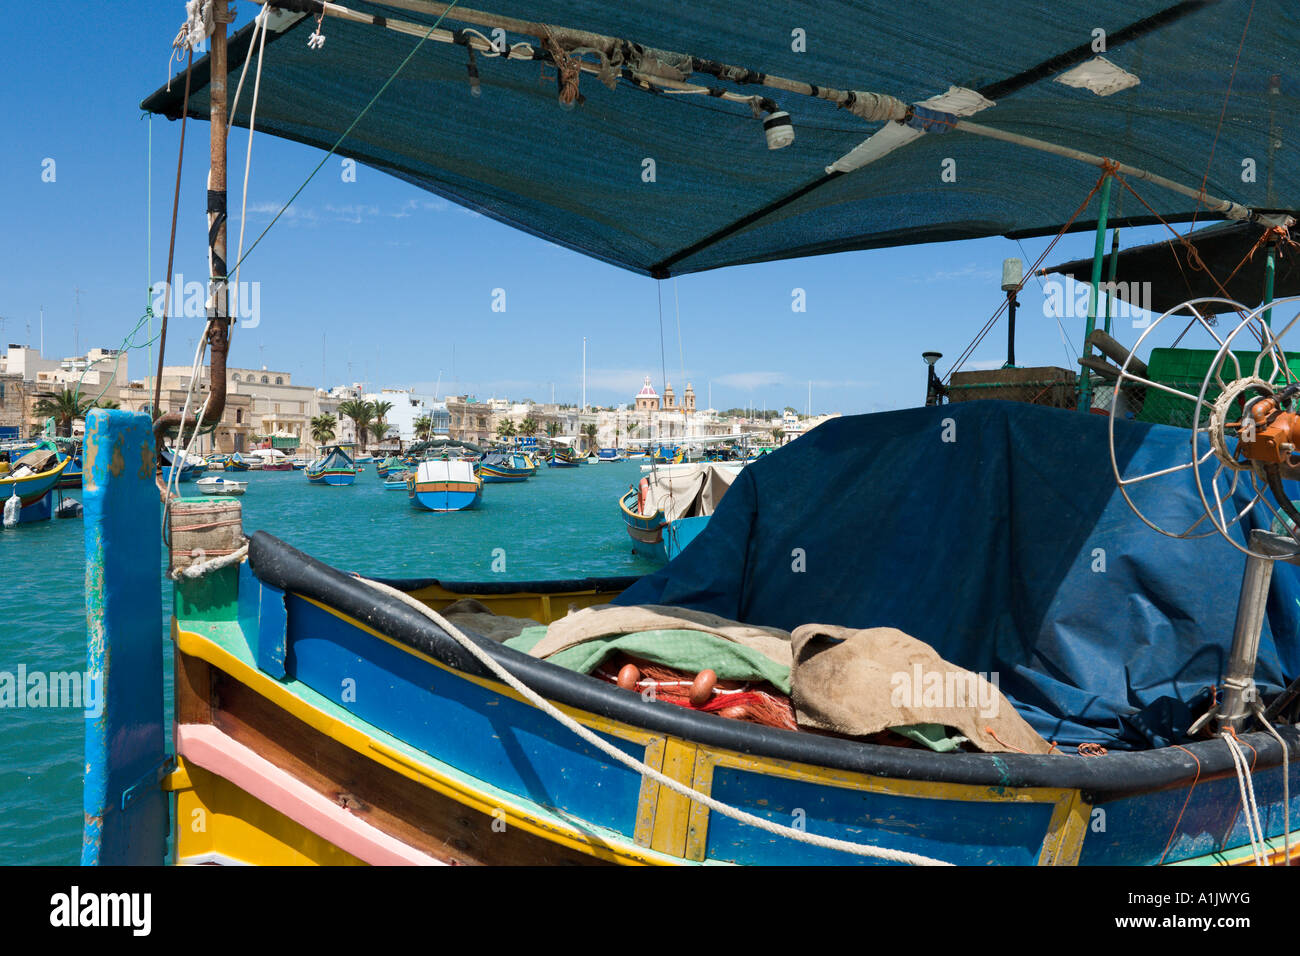 Bateau de pêche typique de la région dans le port de Marsaxlokk, Malte Banque D'Images